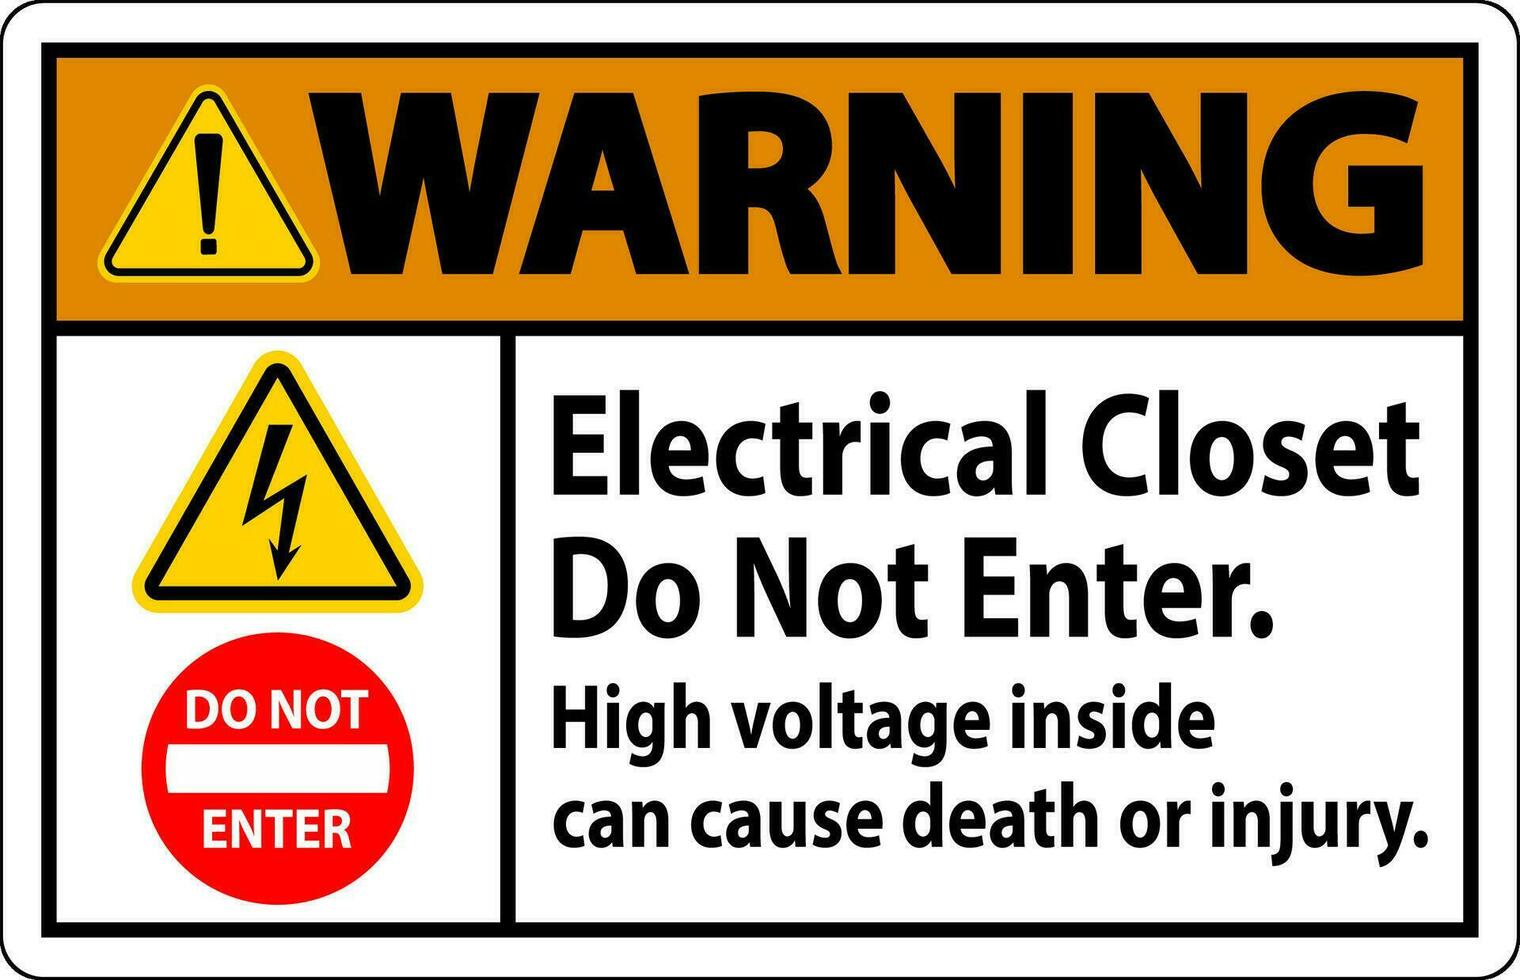 advertencia firmar eléctrico armario - hacer no ingresar. alto voltaje dentro lata porque muerte o lesión vector